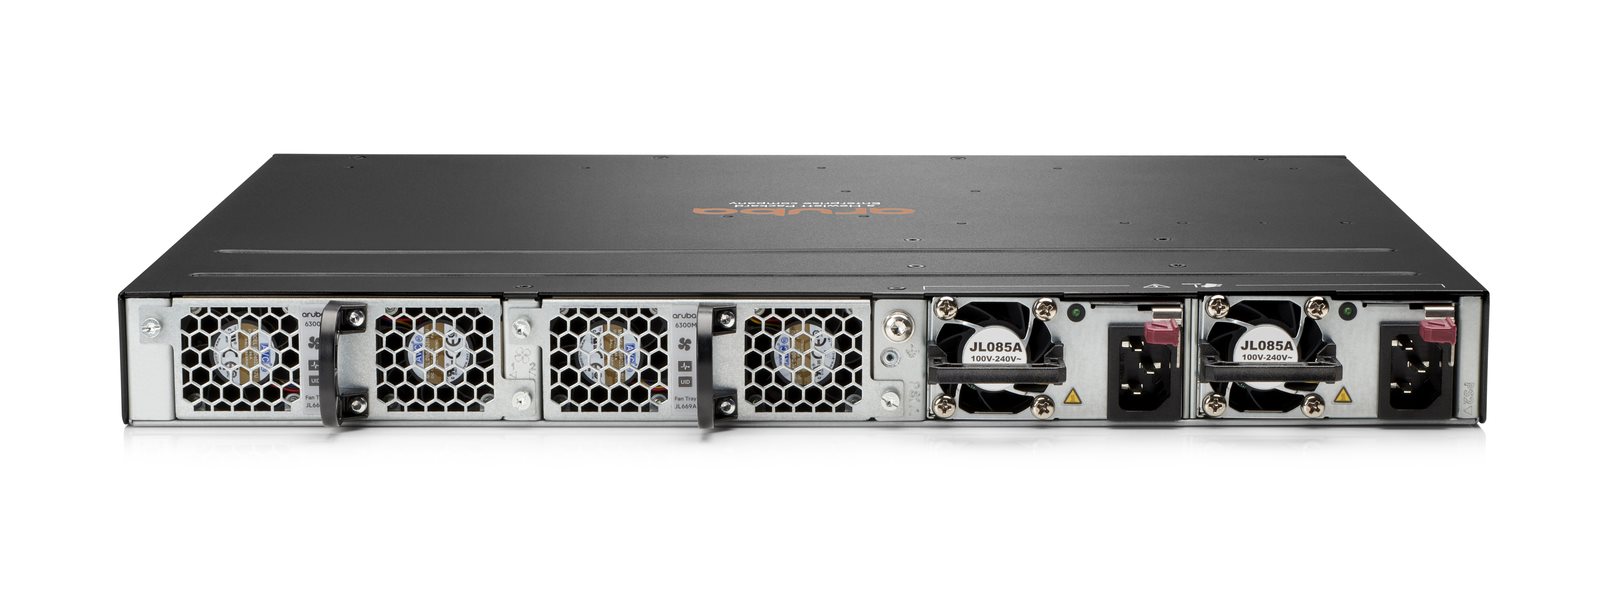 Aruba 6300M 24-port SFP+ and 4-port SFP56 Switch3 